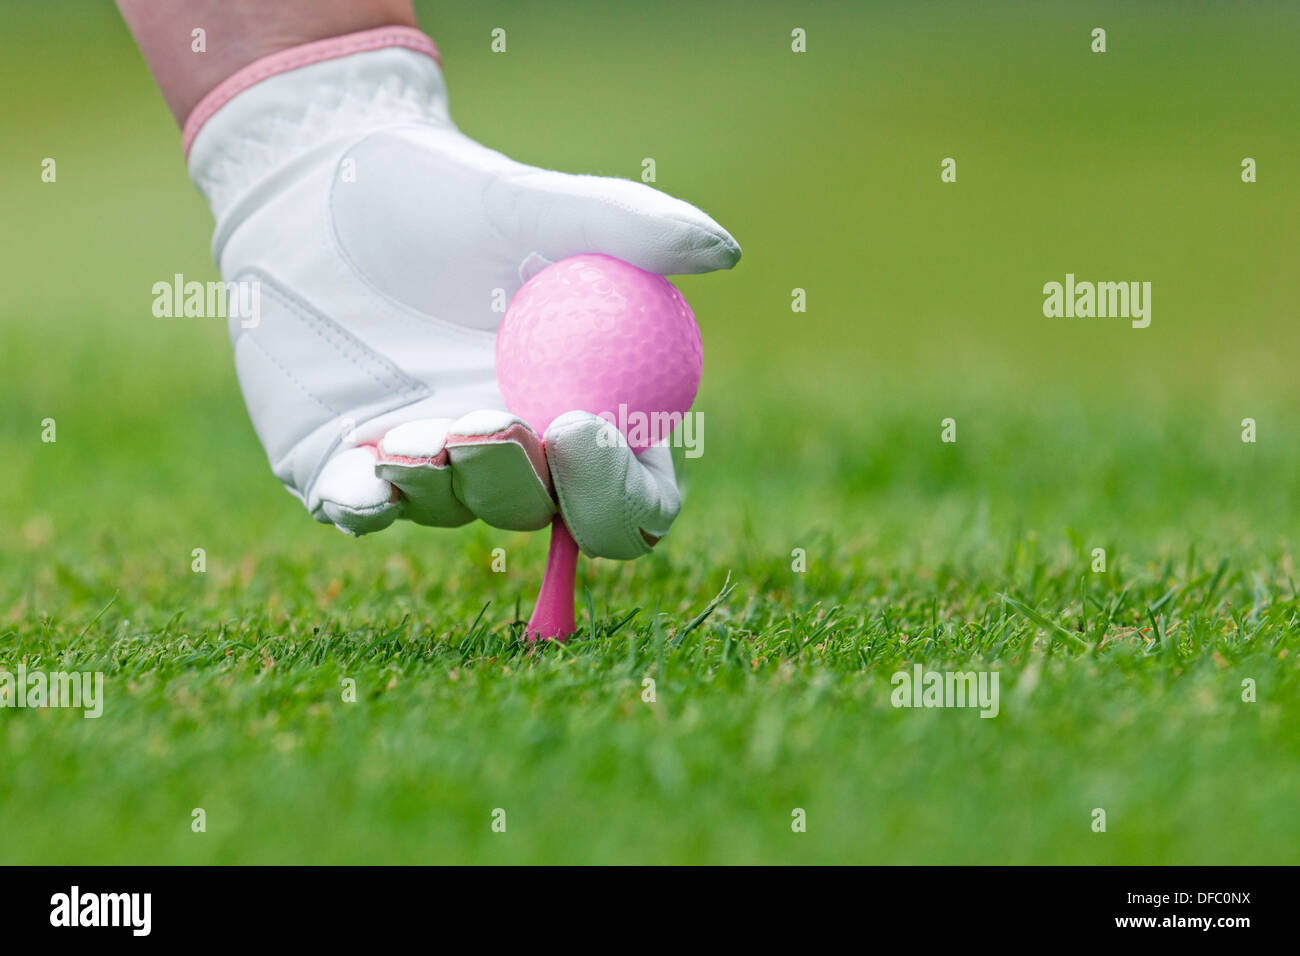 Une main en cuir blanc dames glove tenant une balle de golf rose plaçant un tee dans le sol. Banque D'Images